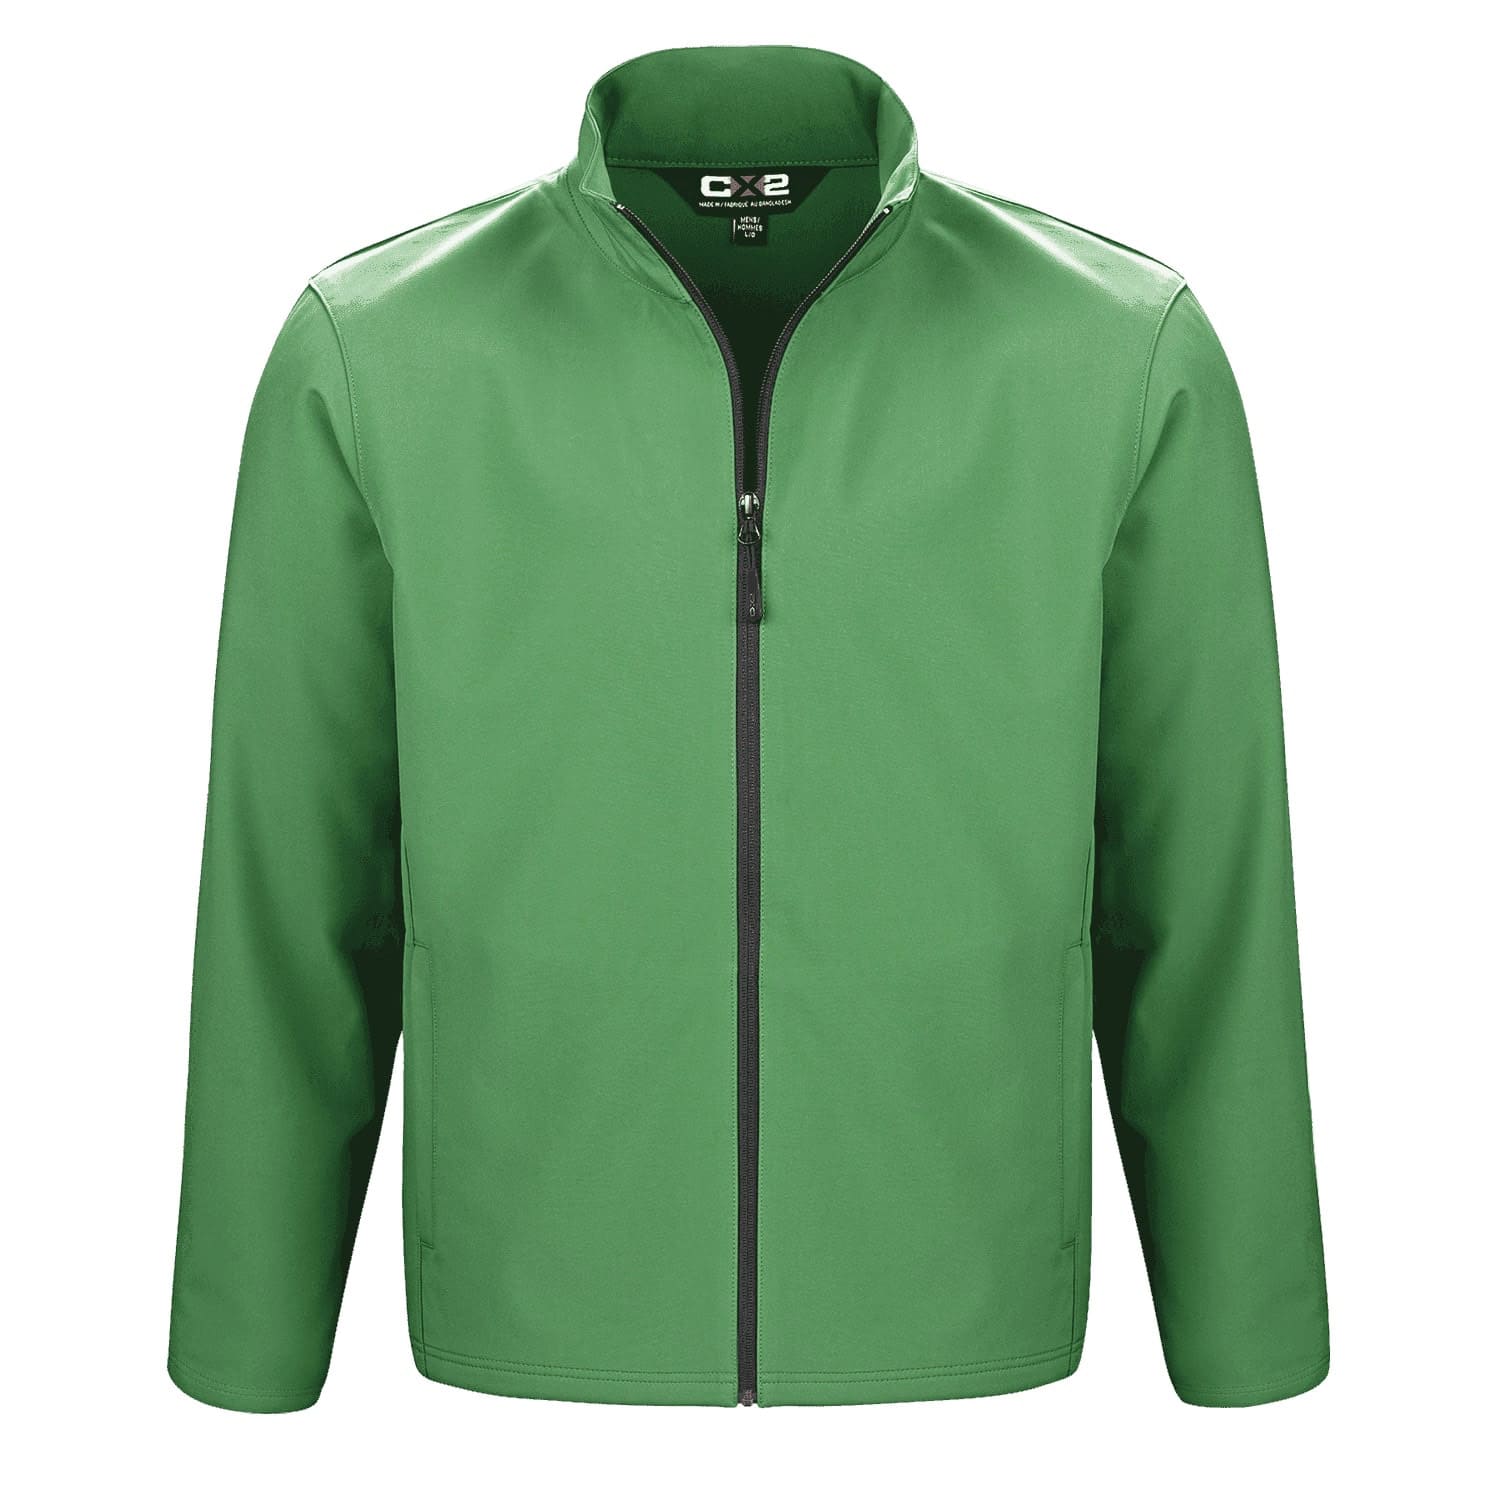 L07240 - Cadet Men’s Lightweight Softshell Jacket Green / S